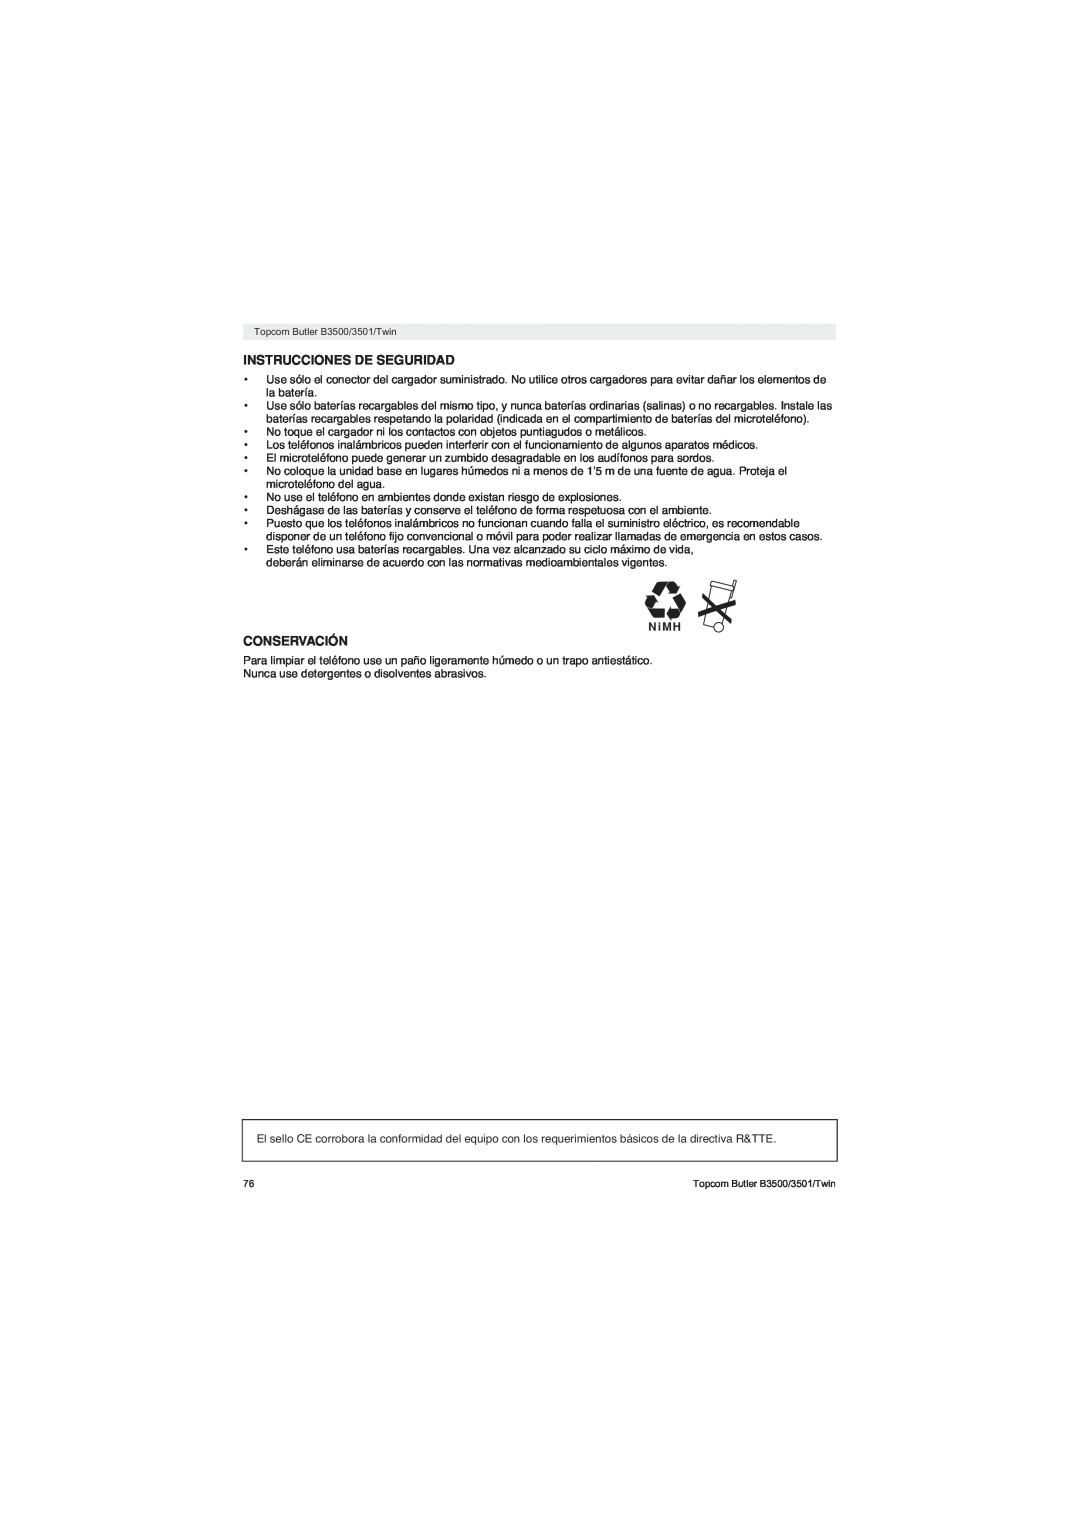 Topcom BUTLER 3500 manual Instrucciones De Seguridad, Conservación, N i M H 